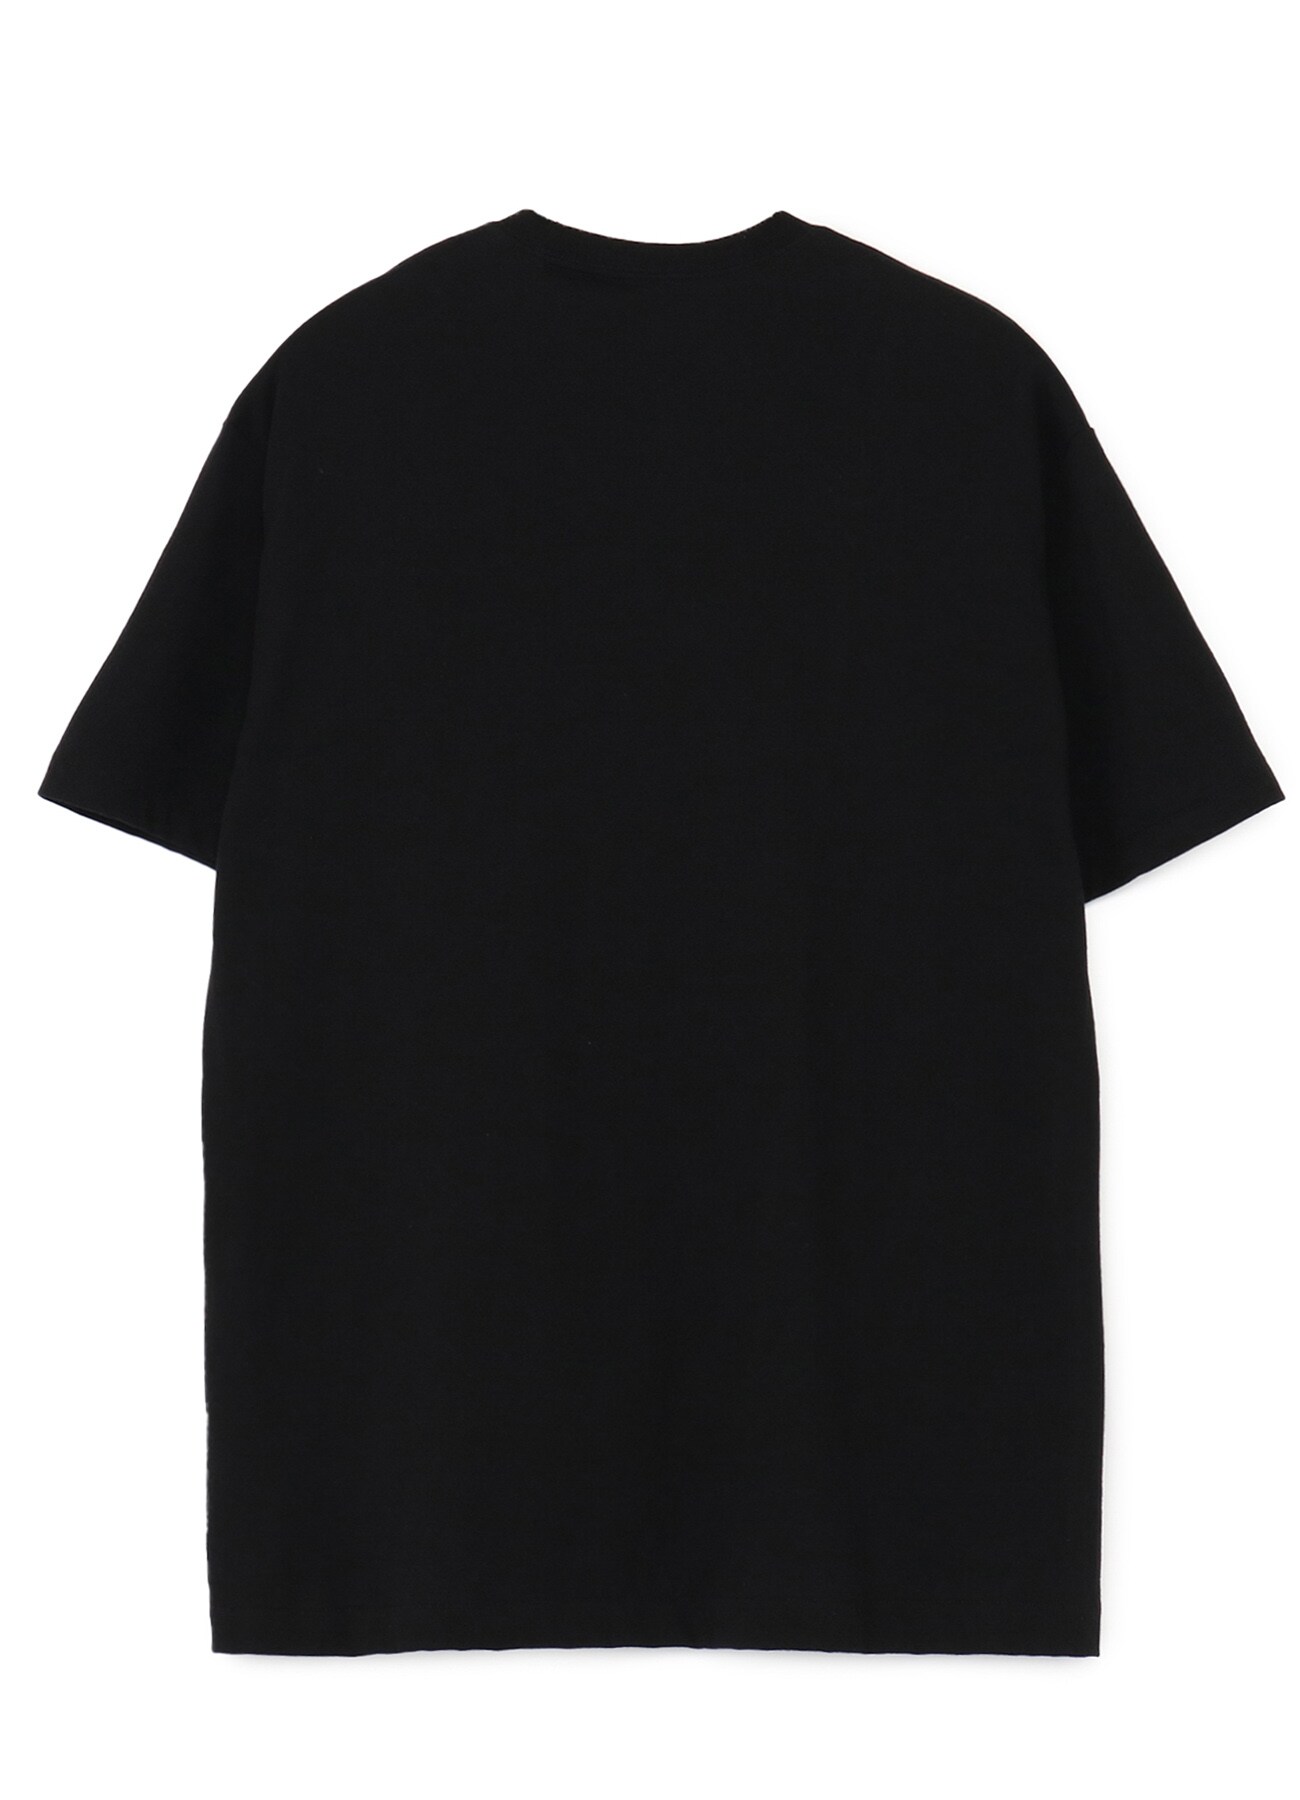 20/-Plain Stitch AL Print T-Shirt B